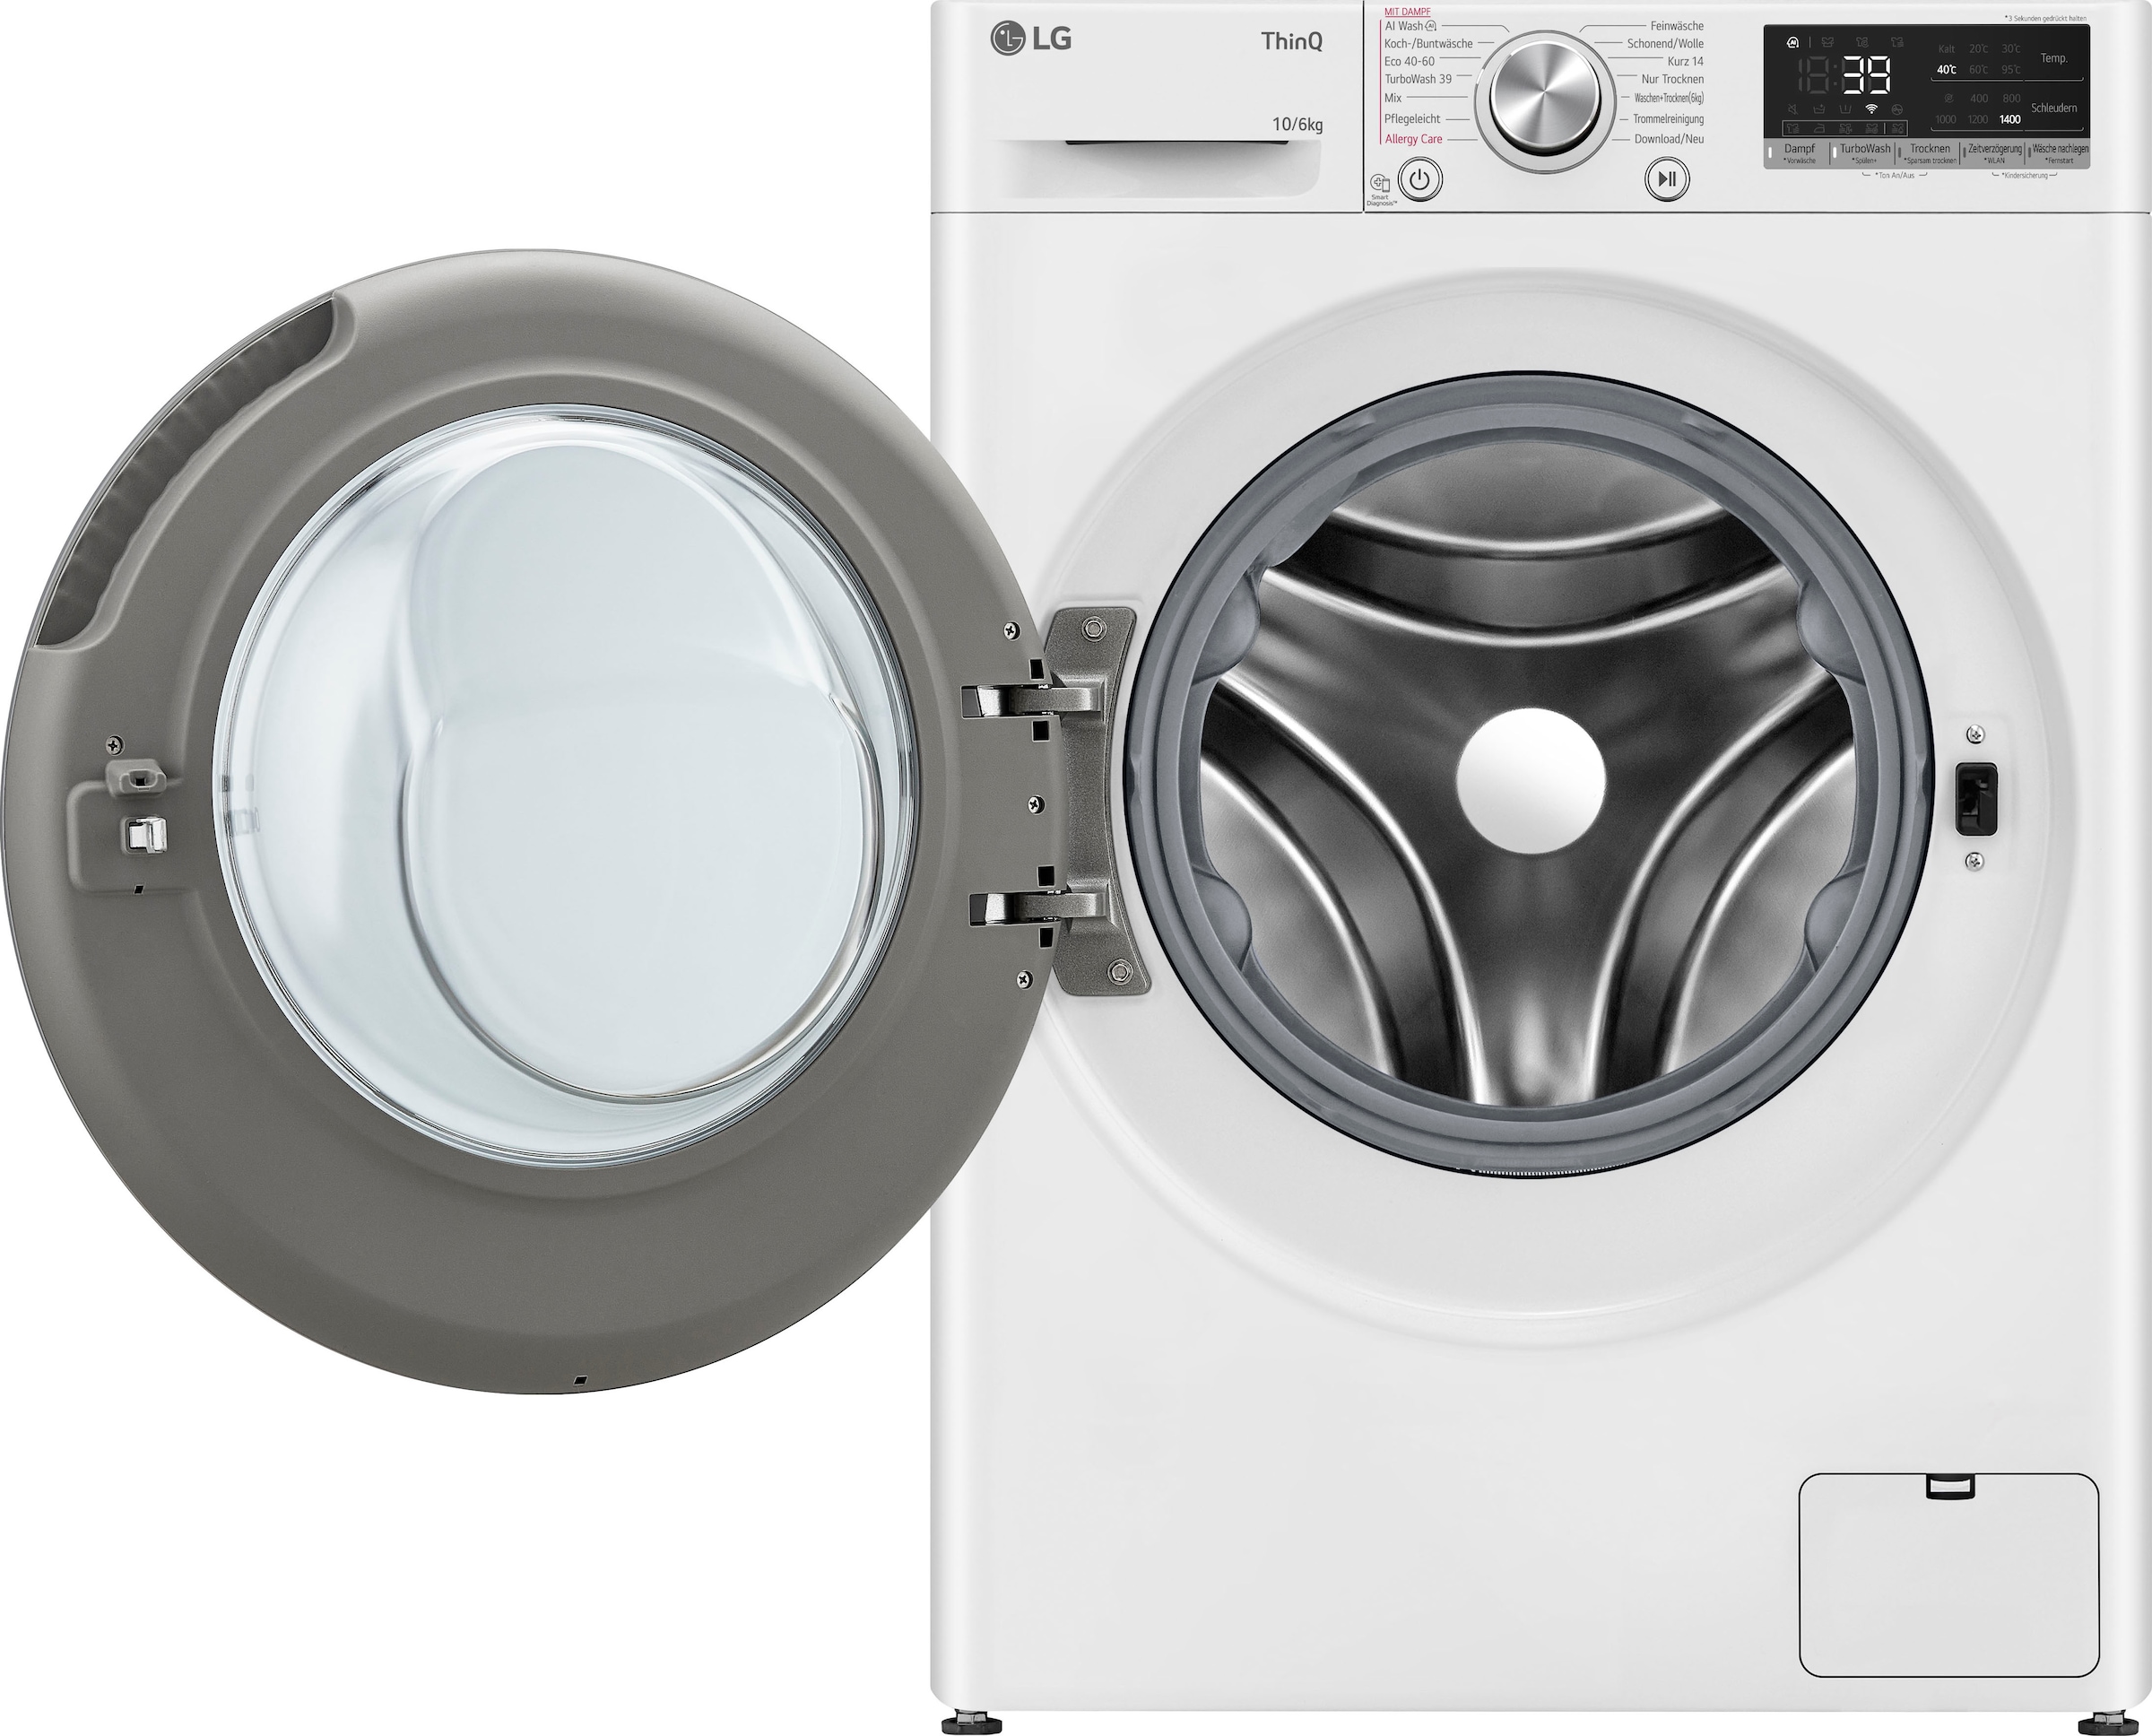 LG Waschtrockner »W4WR70X61«, Serie 7, 4 Jahre Garantie inklusive